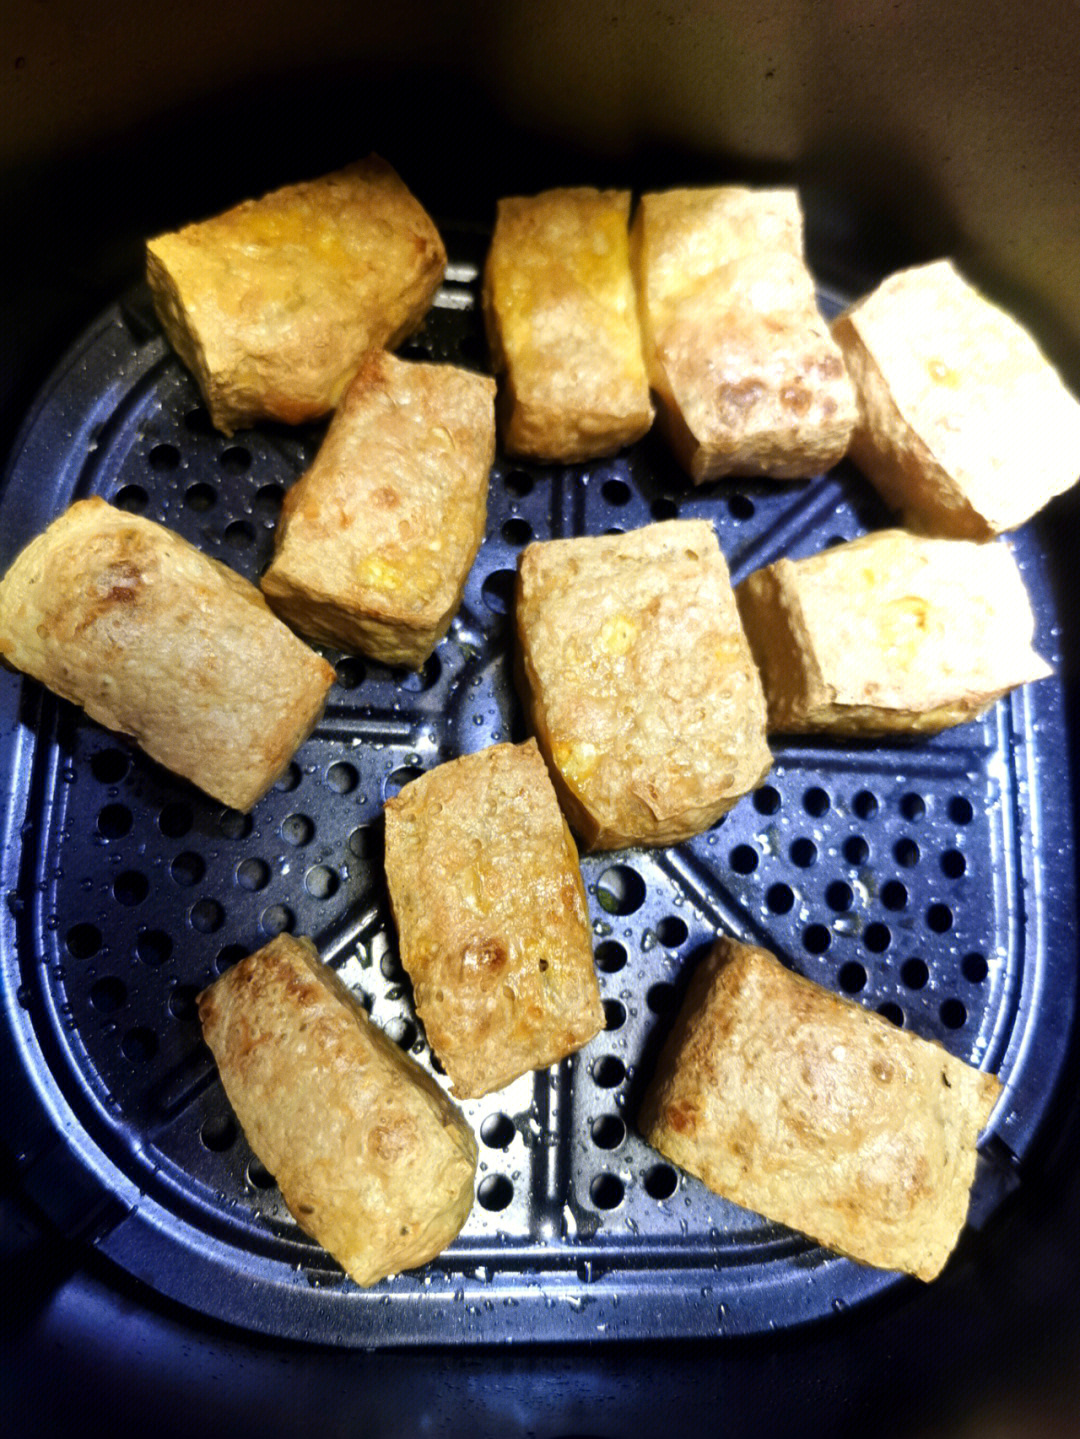 99准备一块老豆腐切块抹油,空气炸锅预热180°5分钟,放入豆腐块180